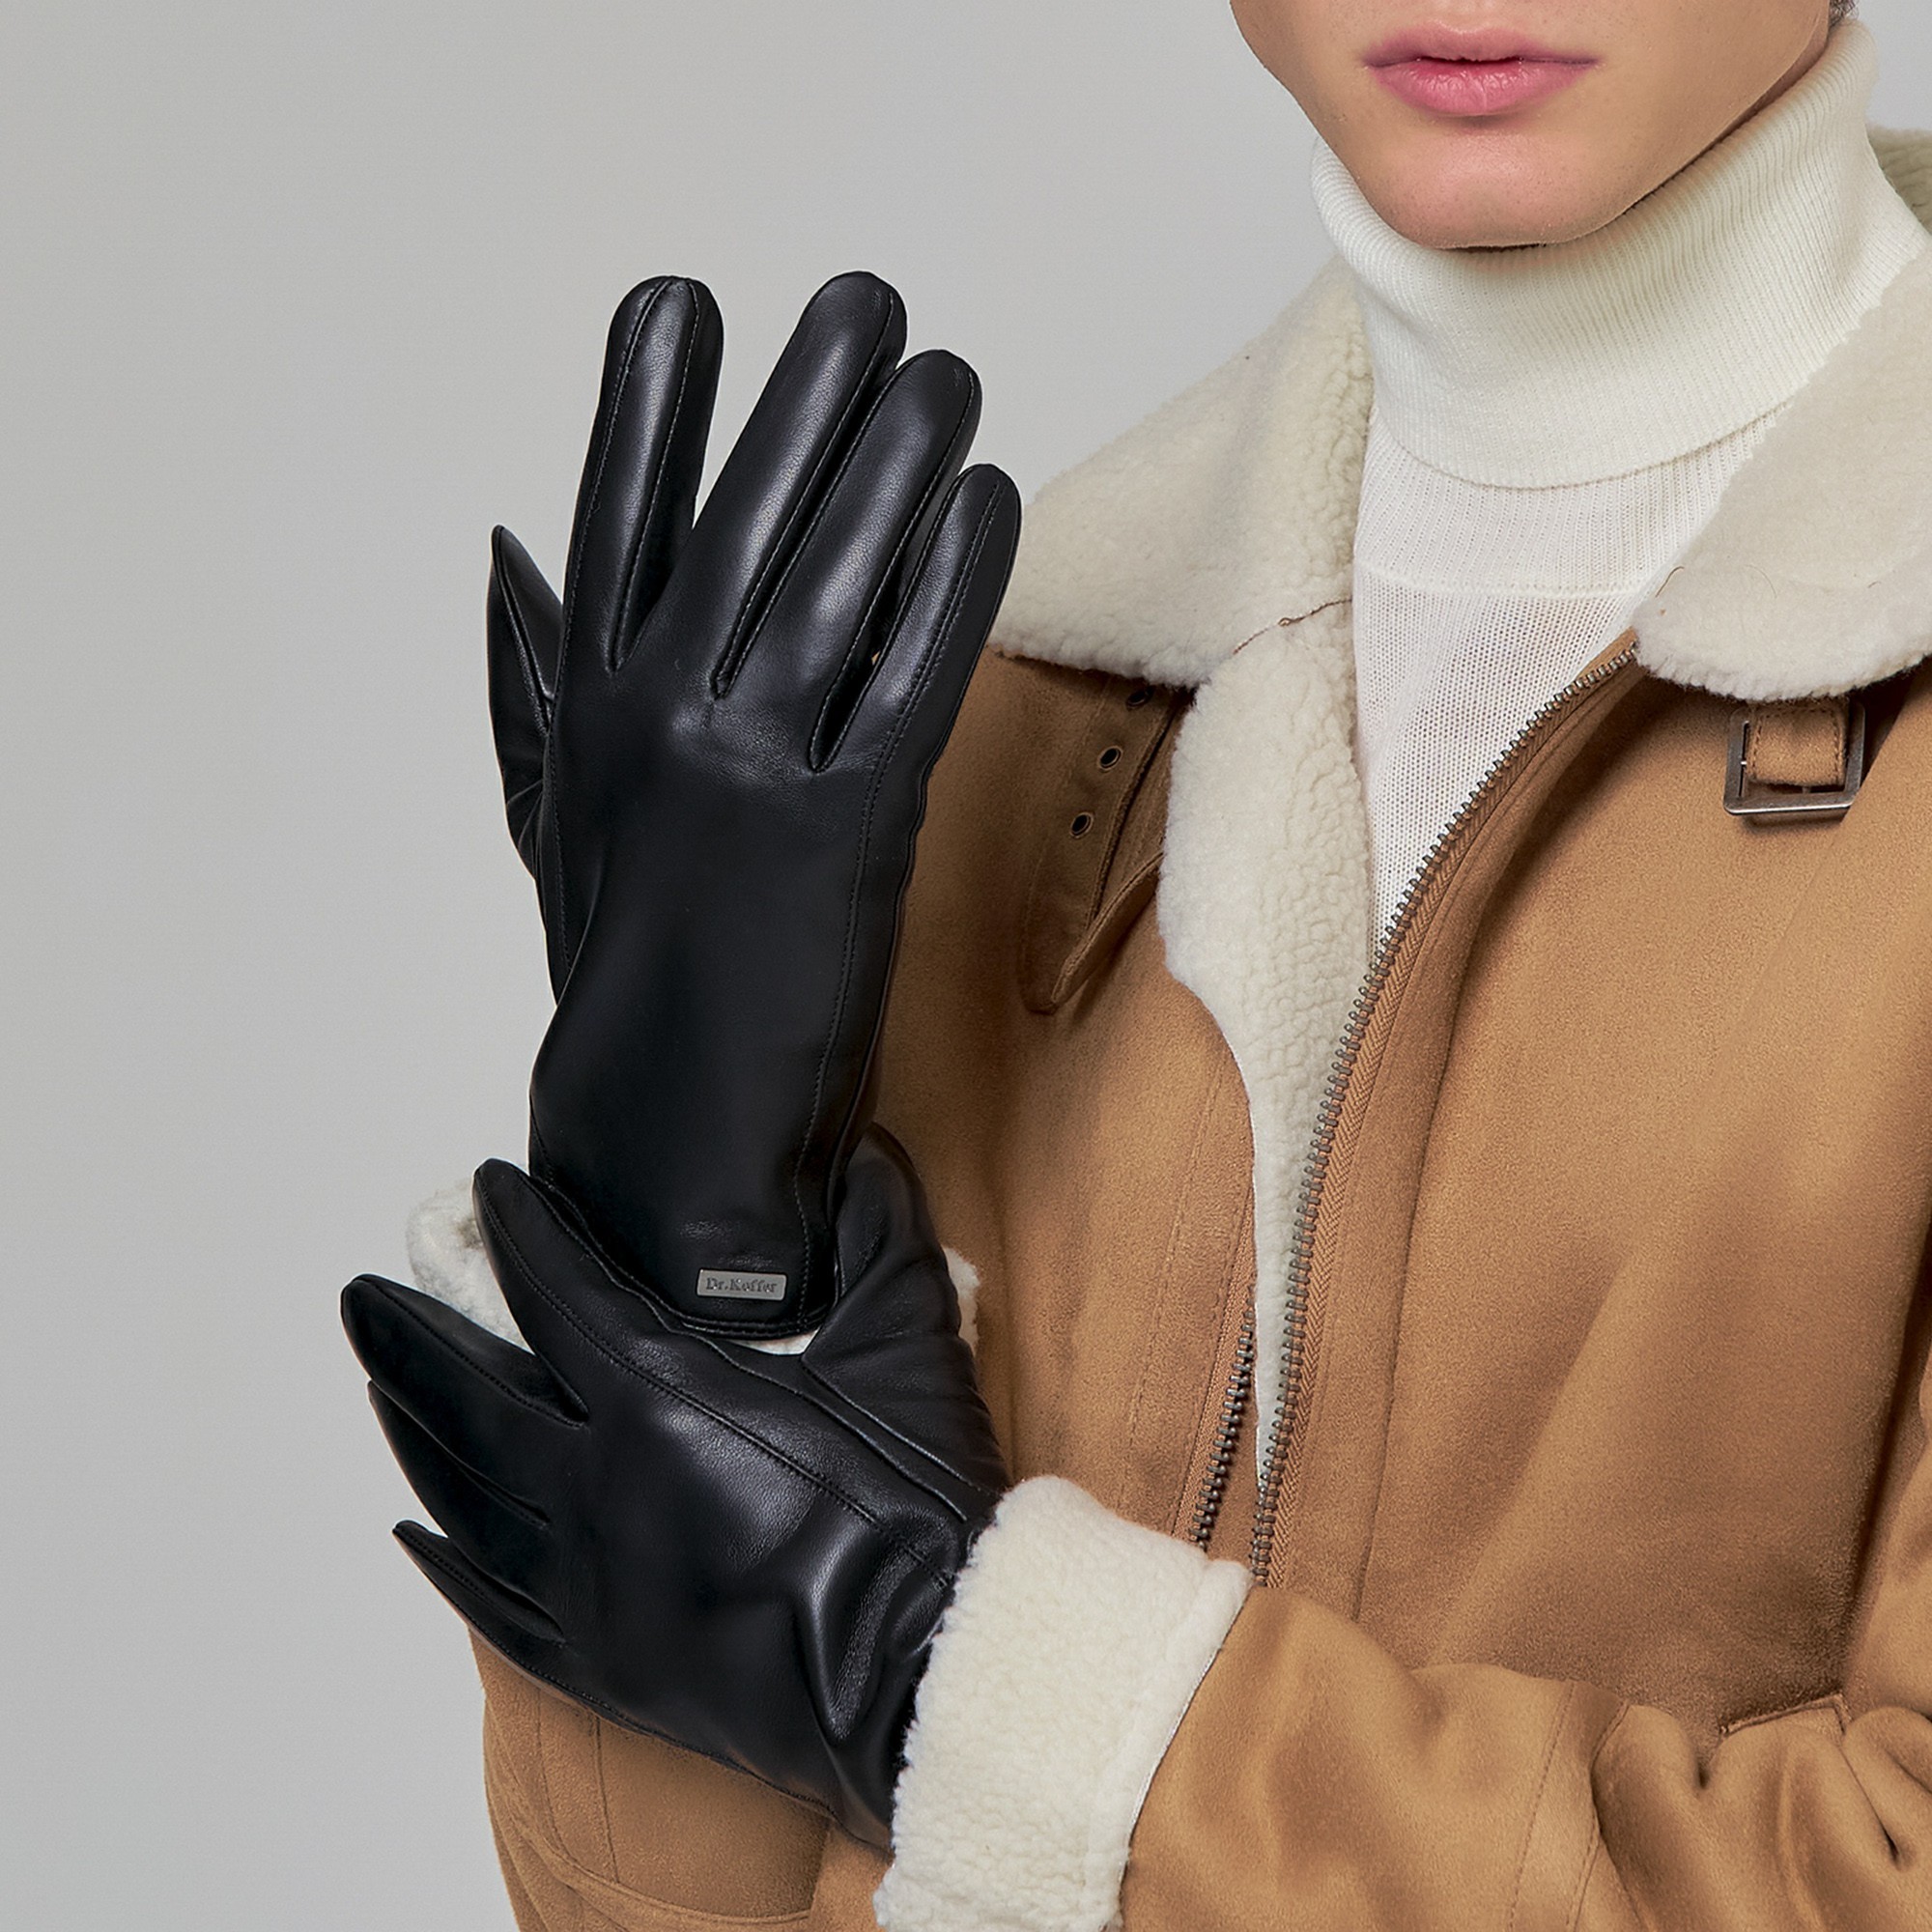 Др.Коффер H760103-236-04 перчатки мужские touch (9,5), размер 9, цвет черный - фото 1